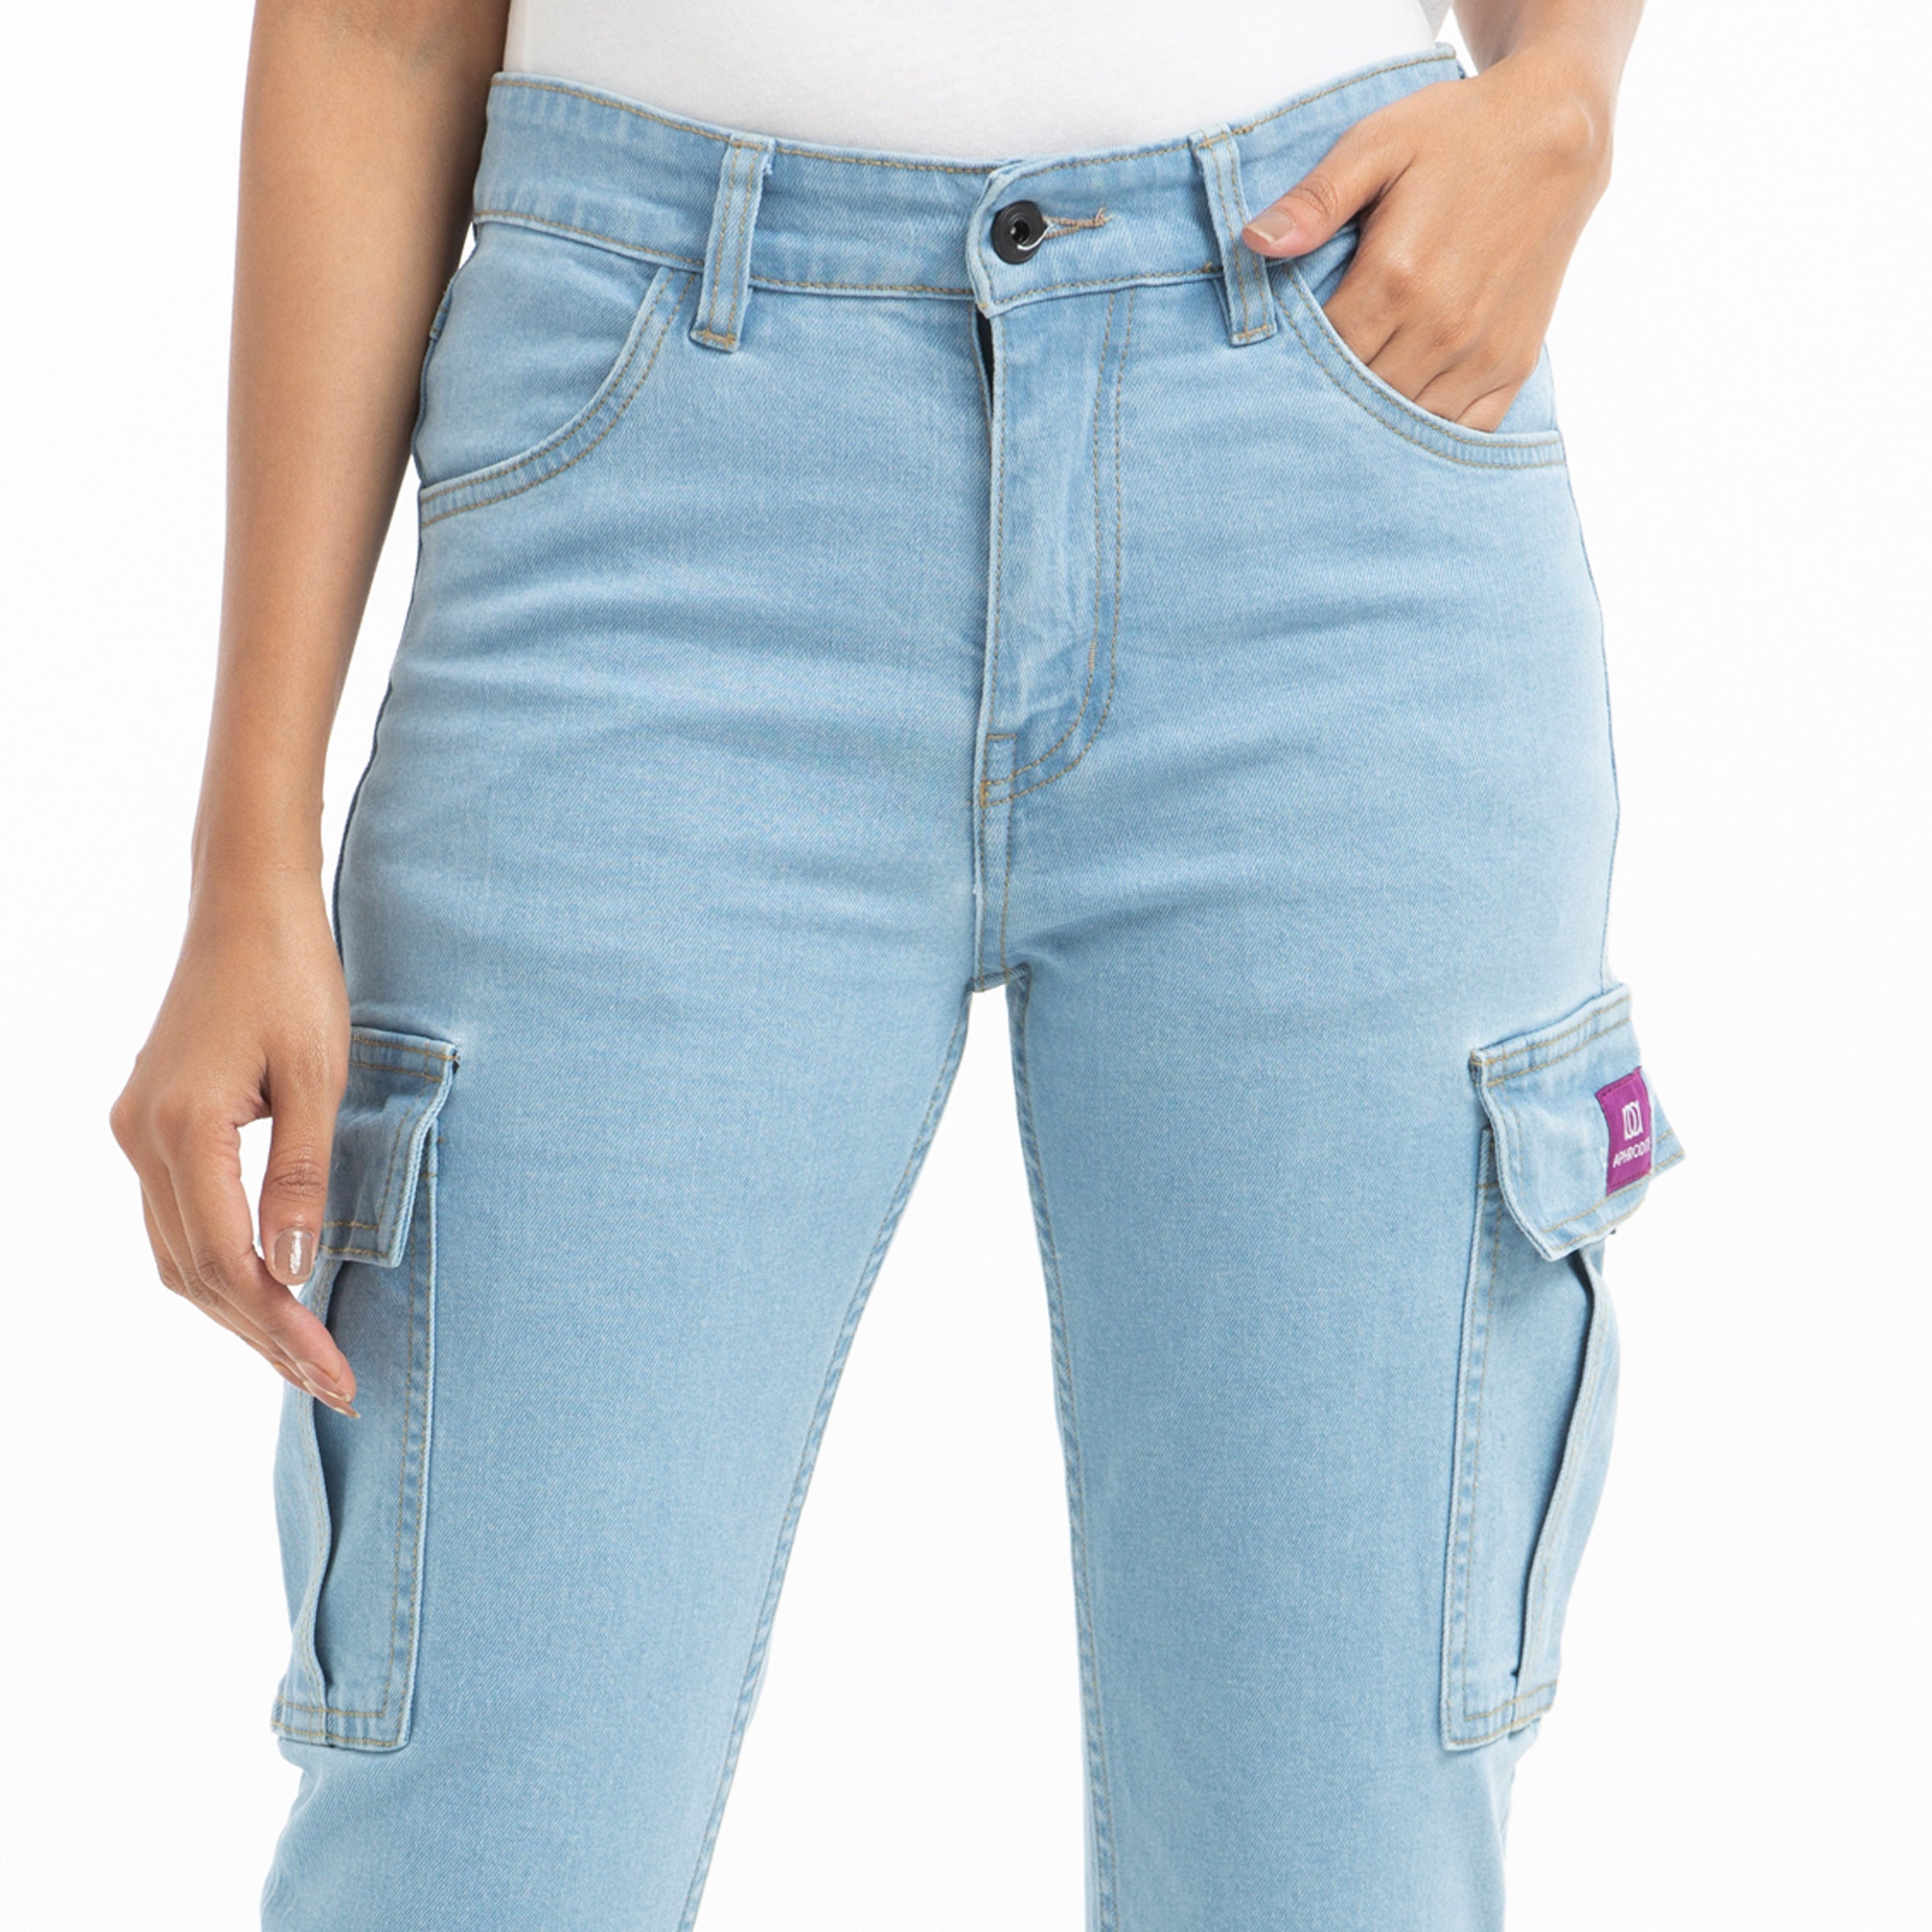 Ladies Denim Cargo Jeans Pant - Super Light